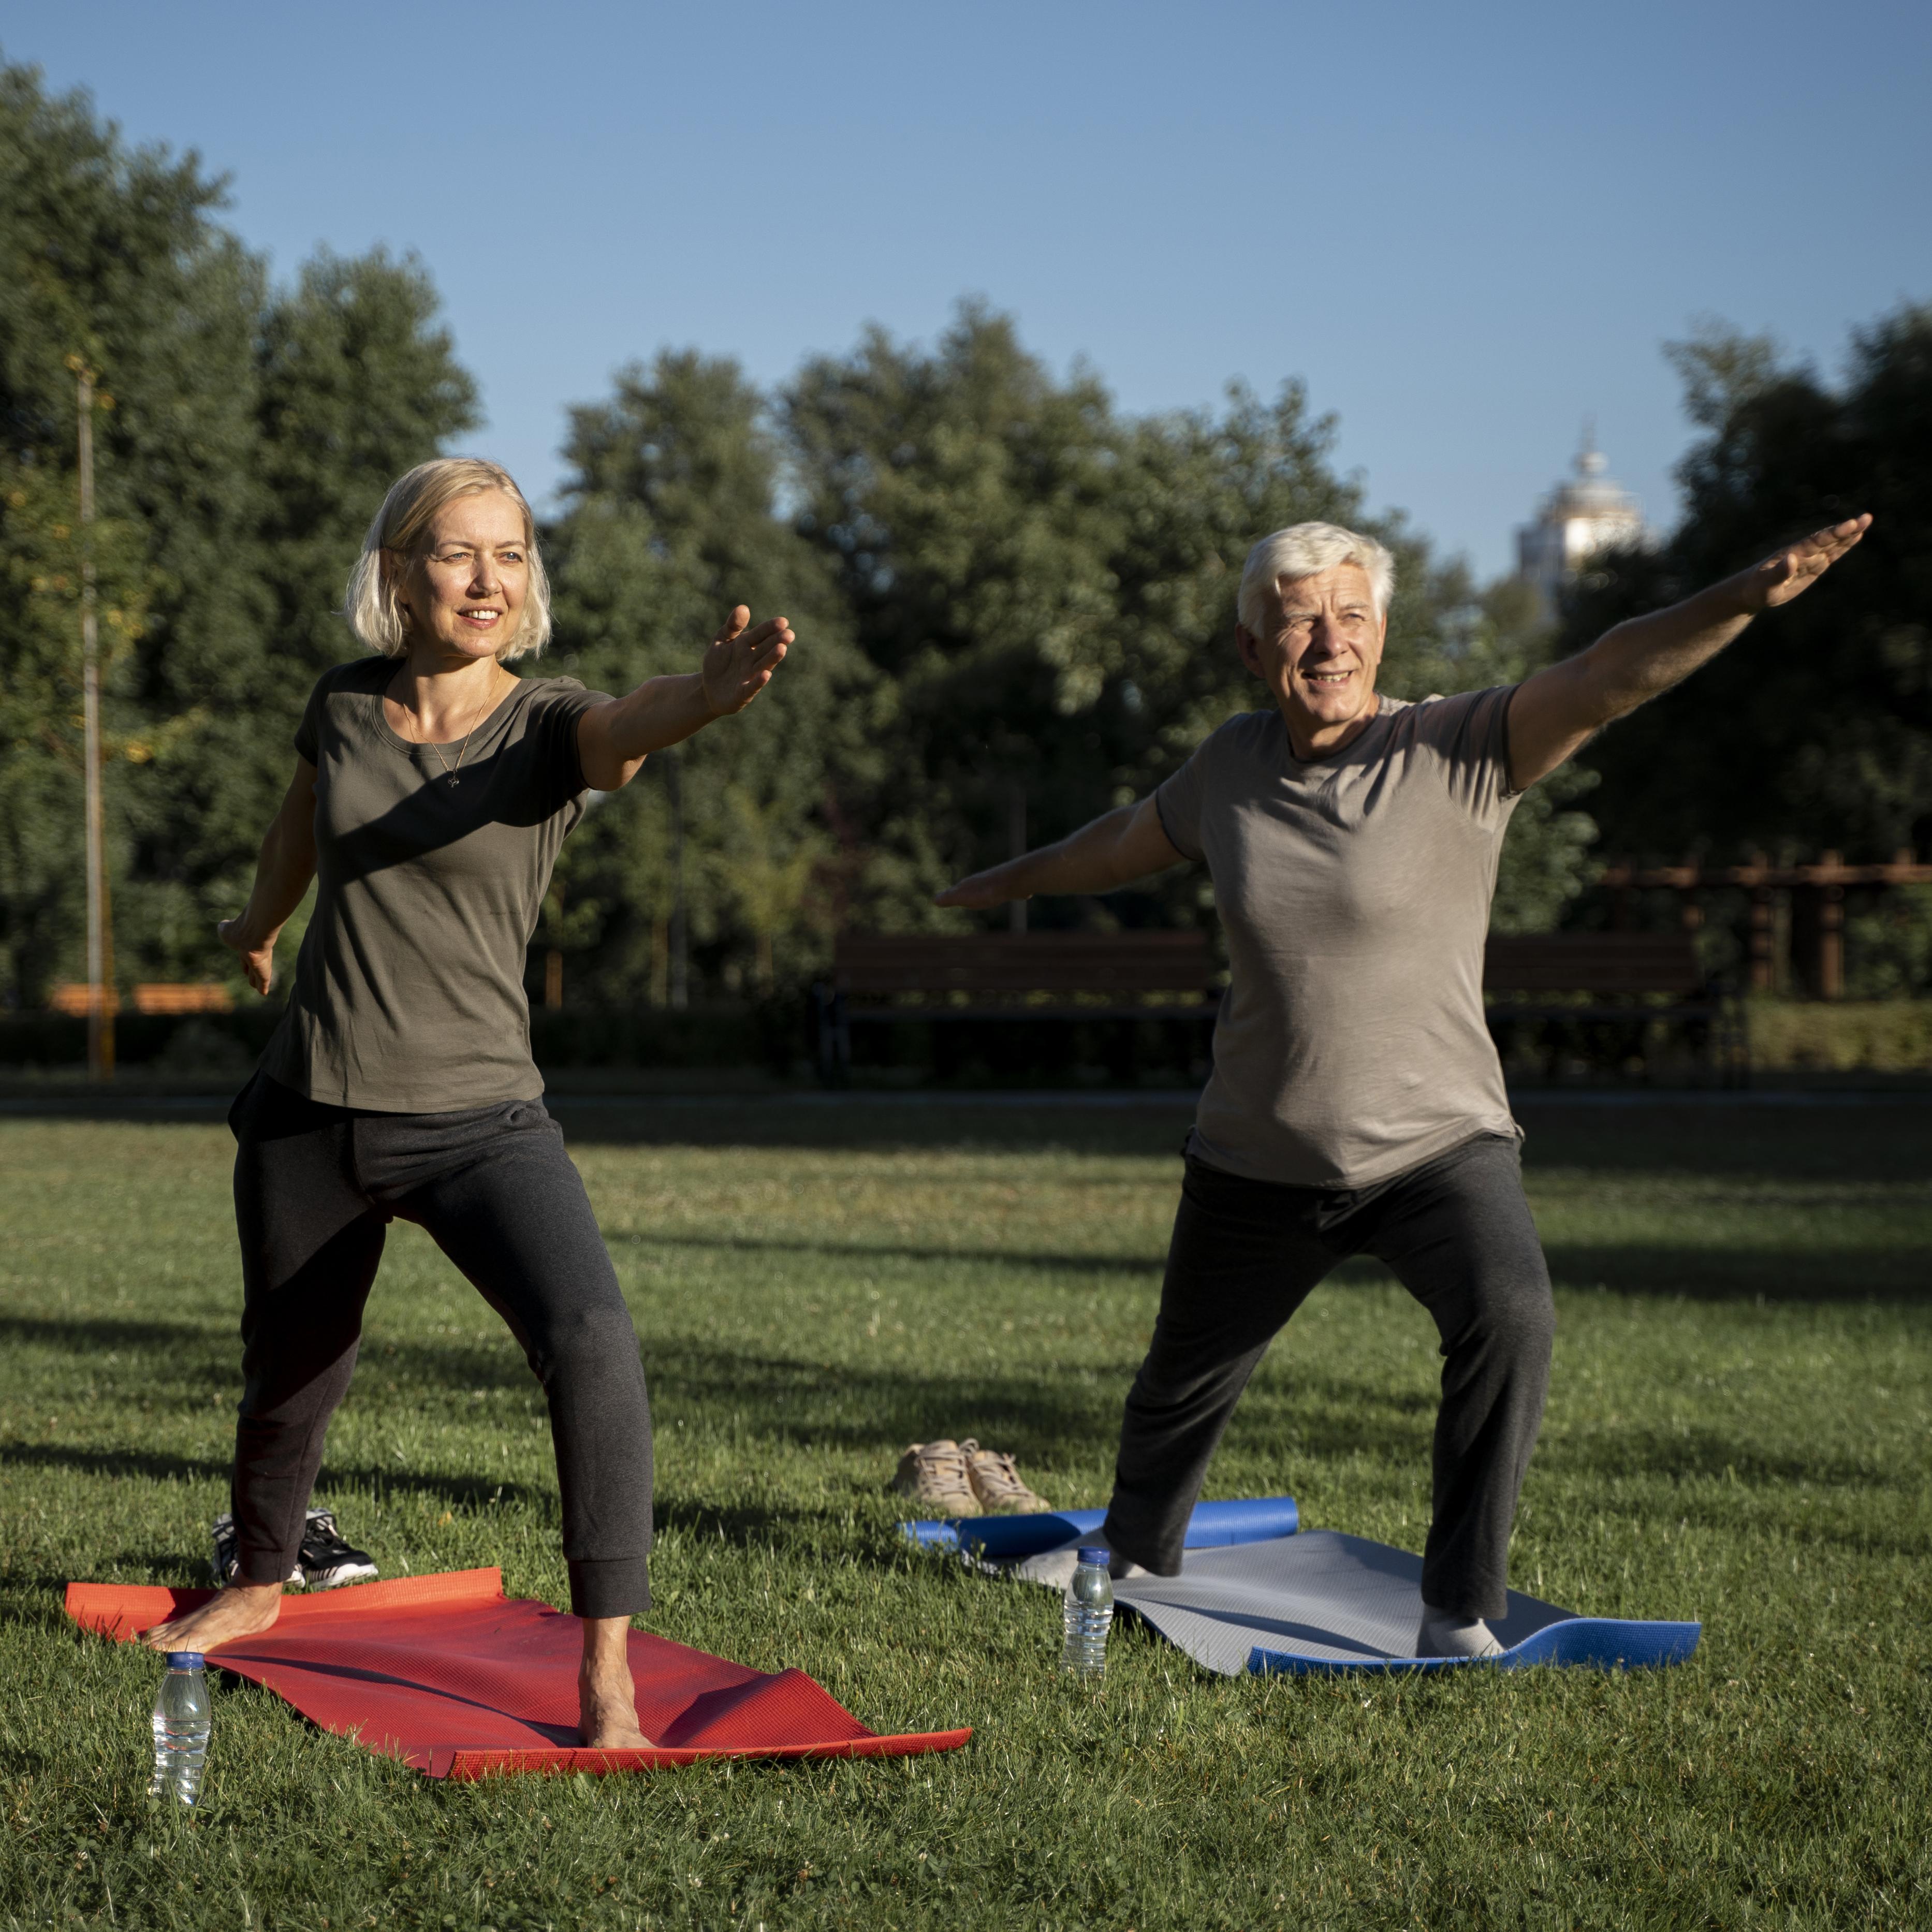 Umiarkowana aktywność fizyczna jest wskazana dla seniorów